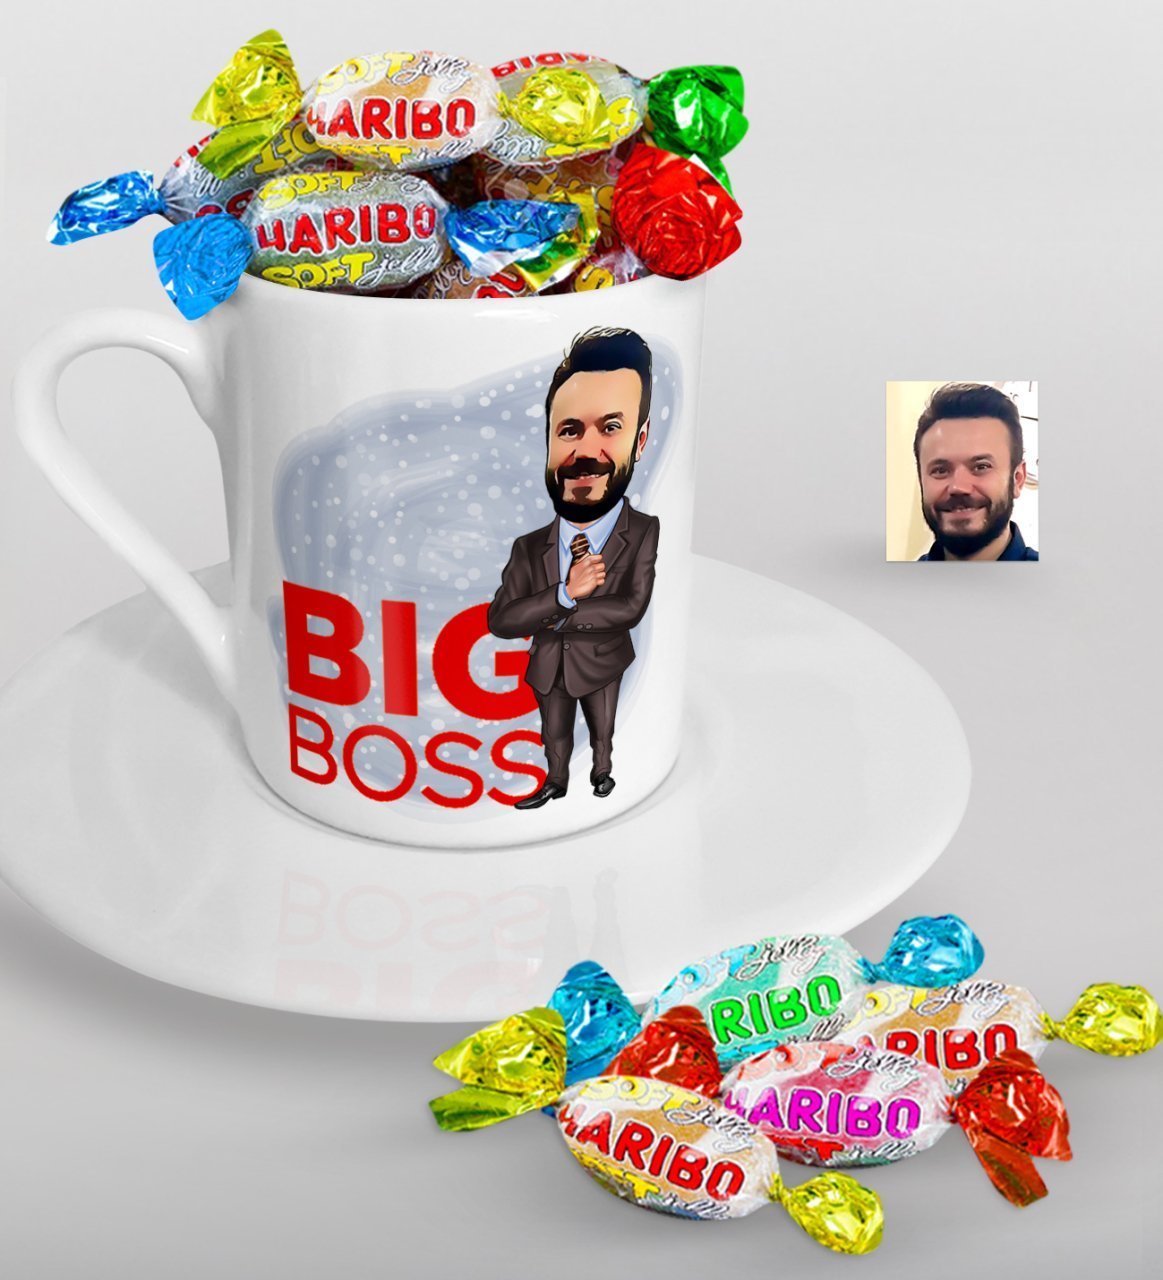 Kişiye Özel Bay Big Boss Karikatürlü Türk Kahvesi Fincanı ve Haribo Şeker Hediye Seti-2